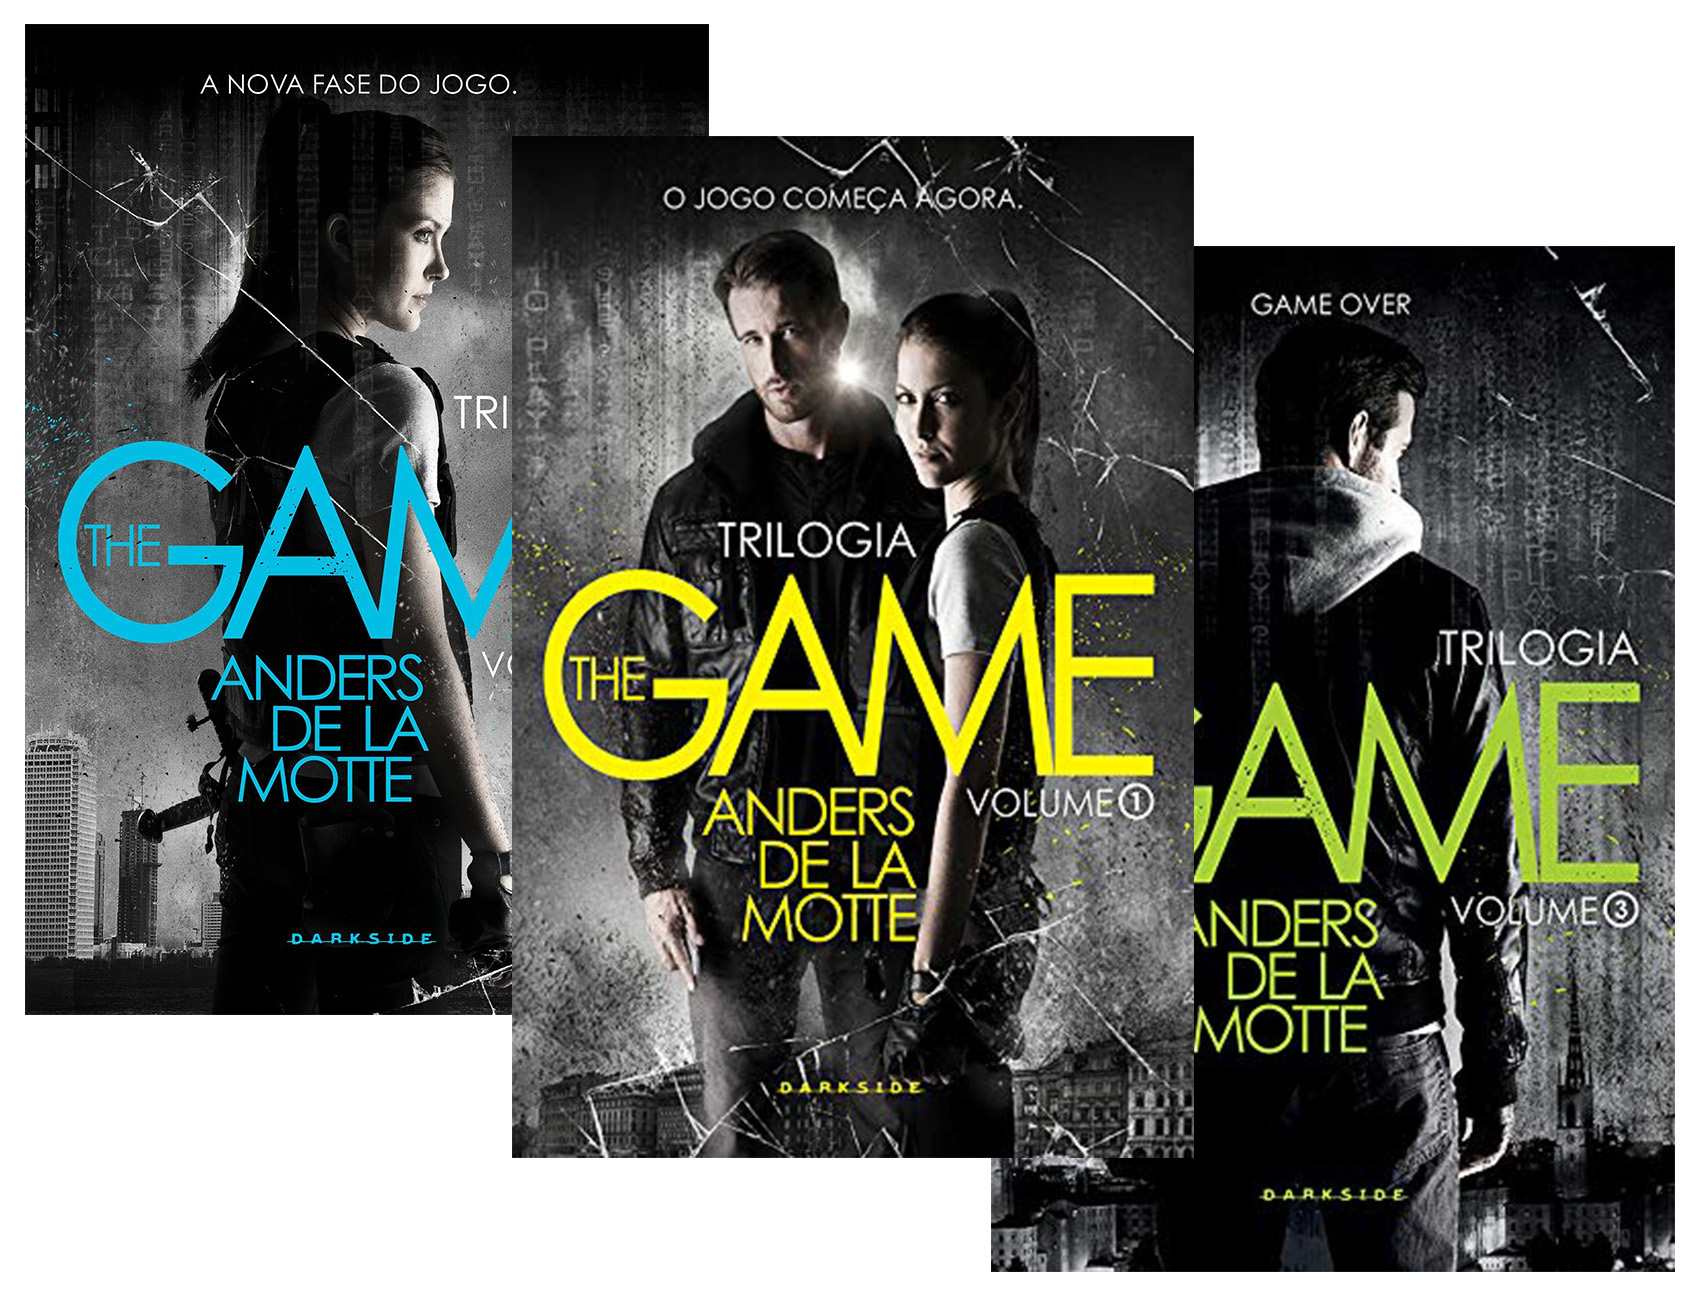 Trilogia The Game, Vol. 1: O Jogo: Jogue agora